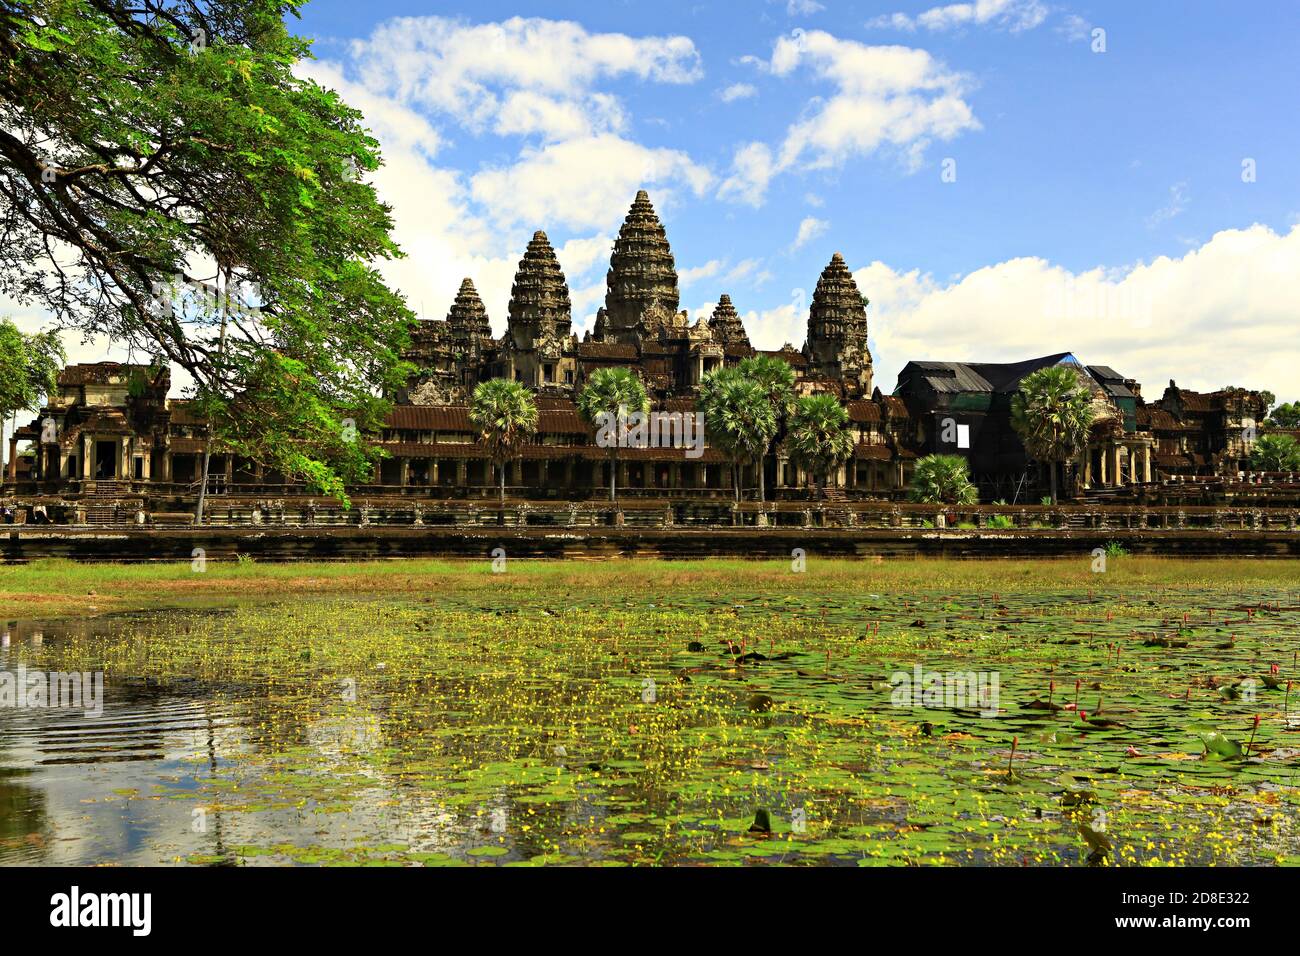 Angkor Wat ist ein Tempelkomplex in Kambodscha und das größte religiöse Denkmal der Welt. Siem Reap, Kambodscha. Künstlerisches Bild. Beauty-Welt Stockfoto